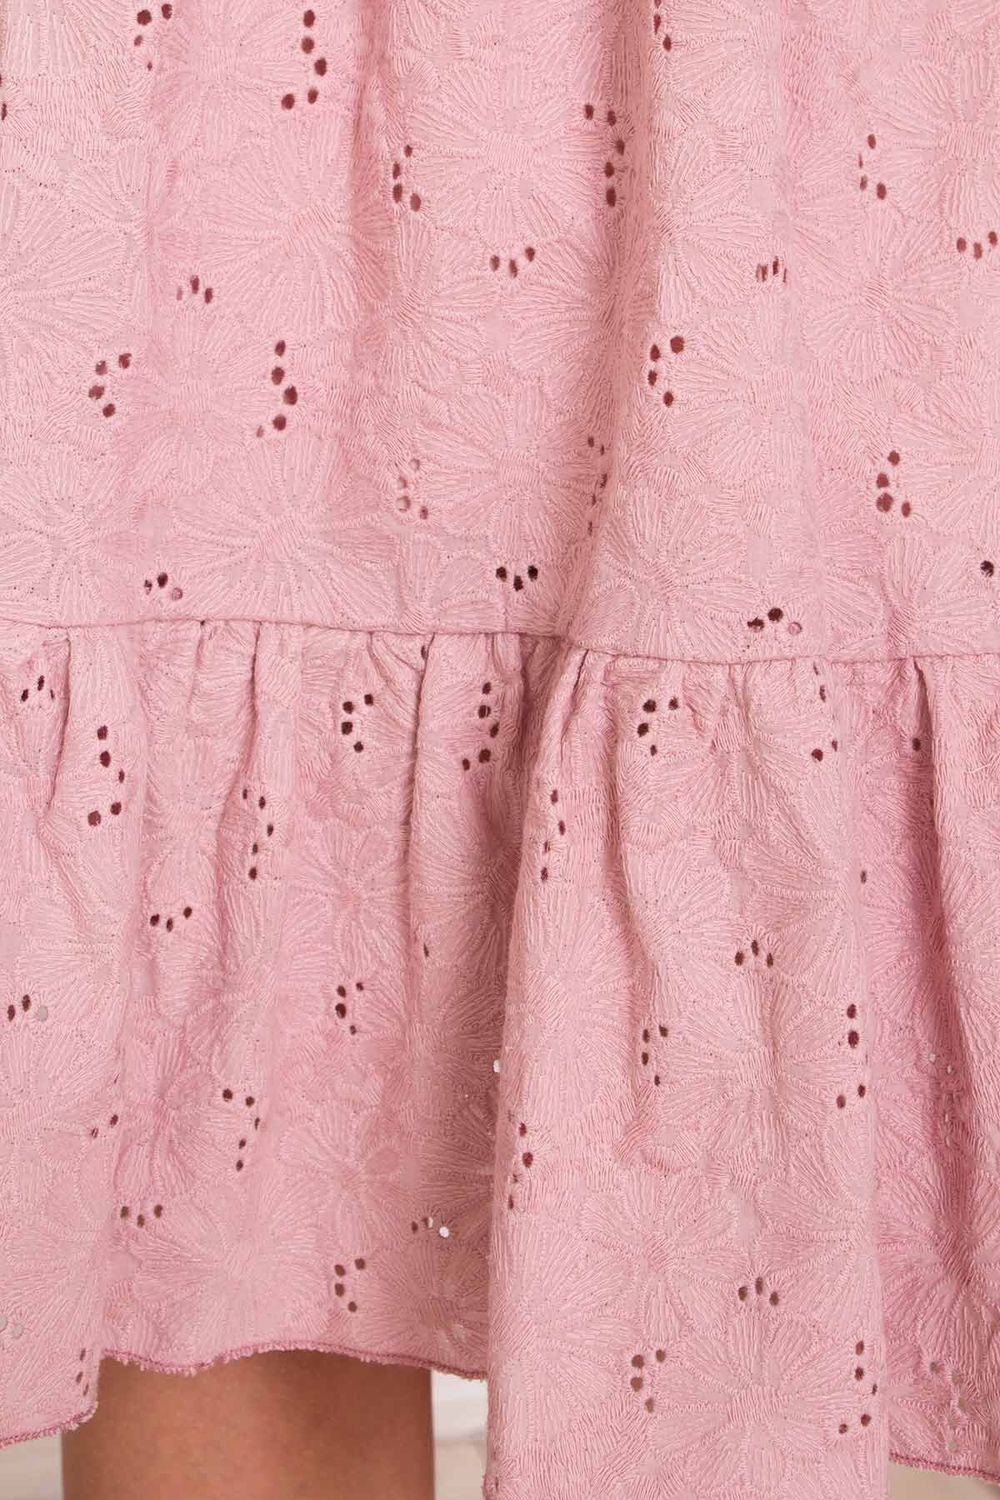 Женский сарафан из прошвы розовый - фото